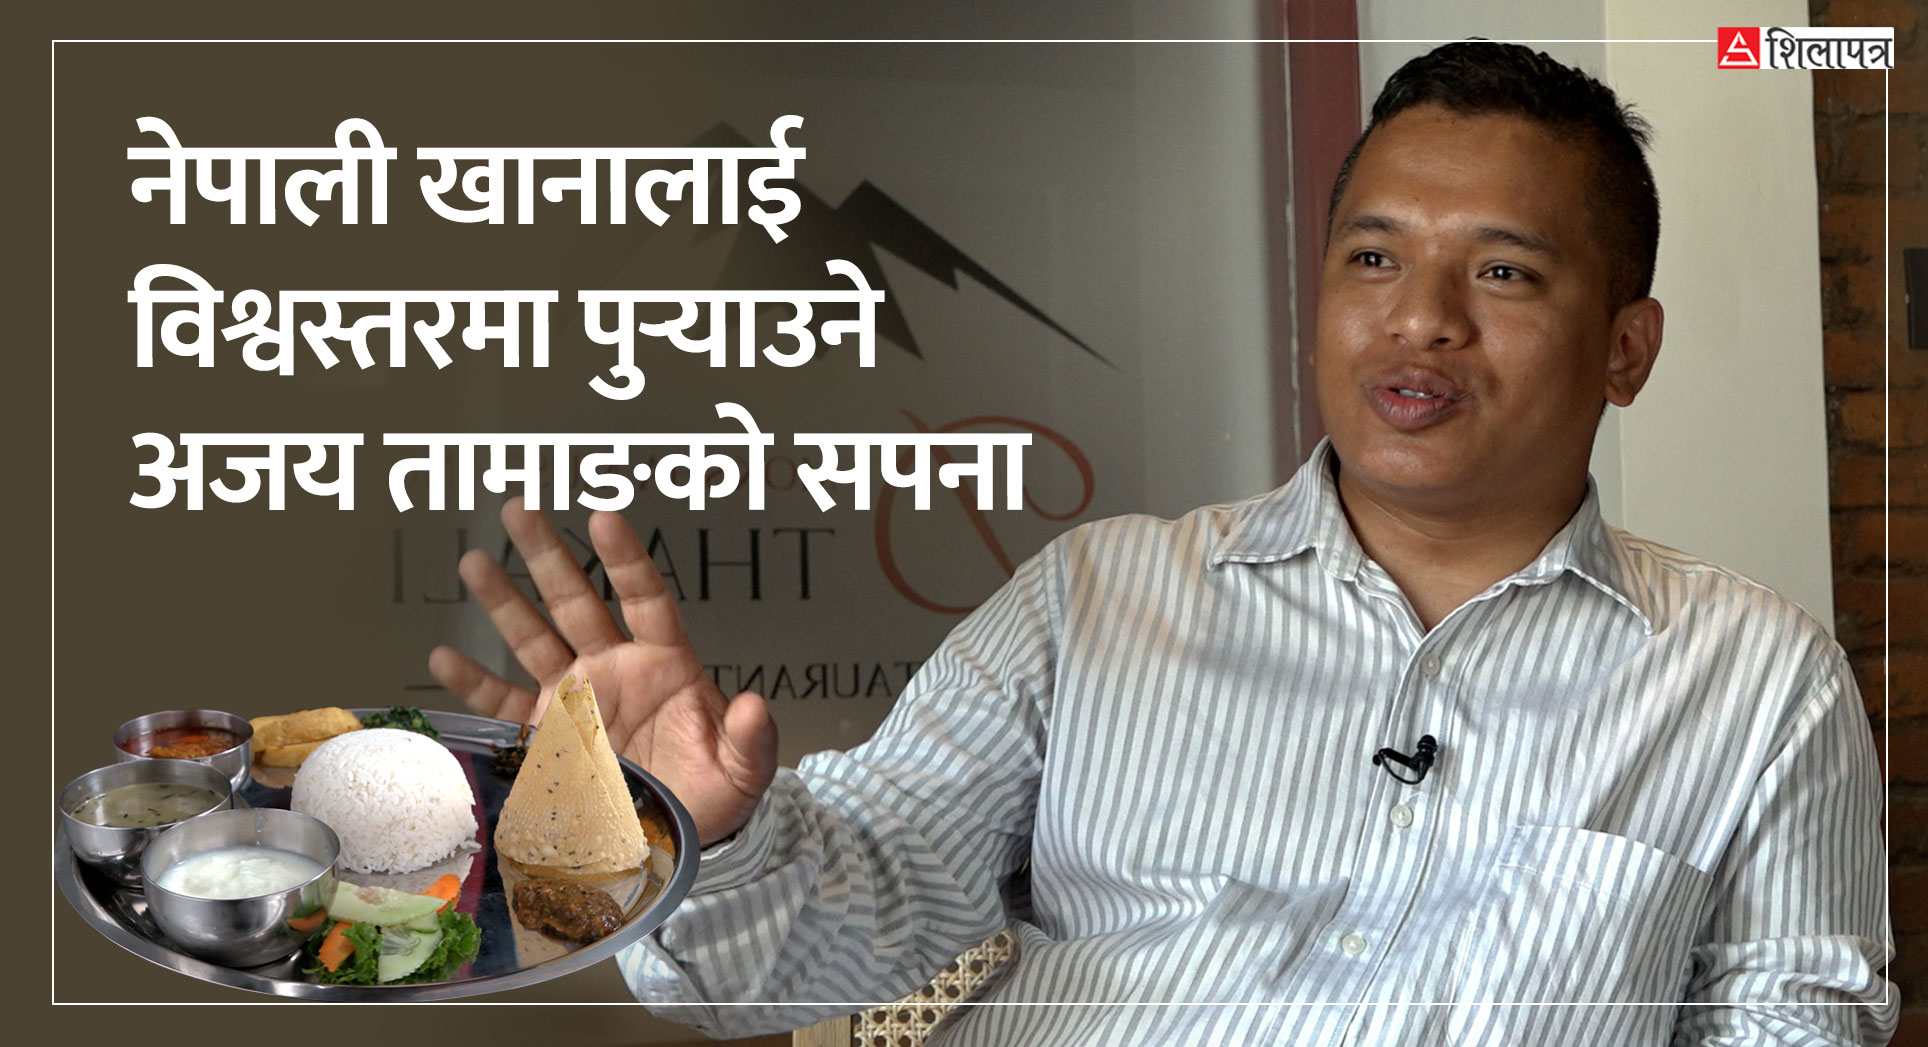 नेपाली खानालाई विश्वस्तरमा पुर्‍याउने अजय तामाङको सपना (भिडियोसहित)